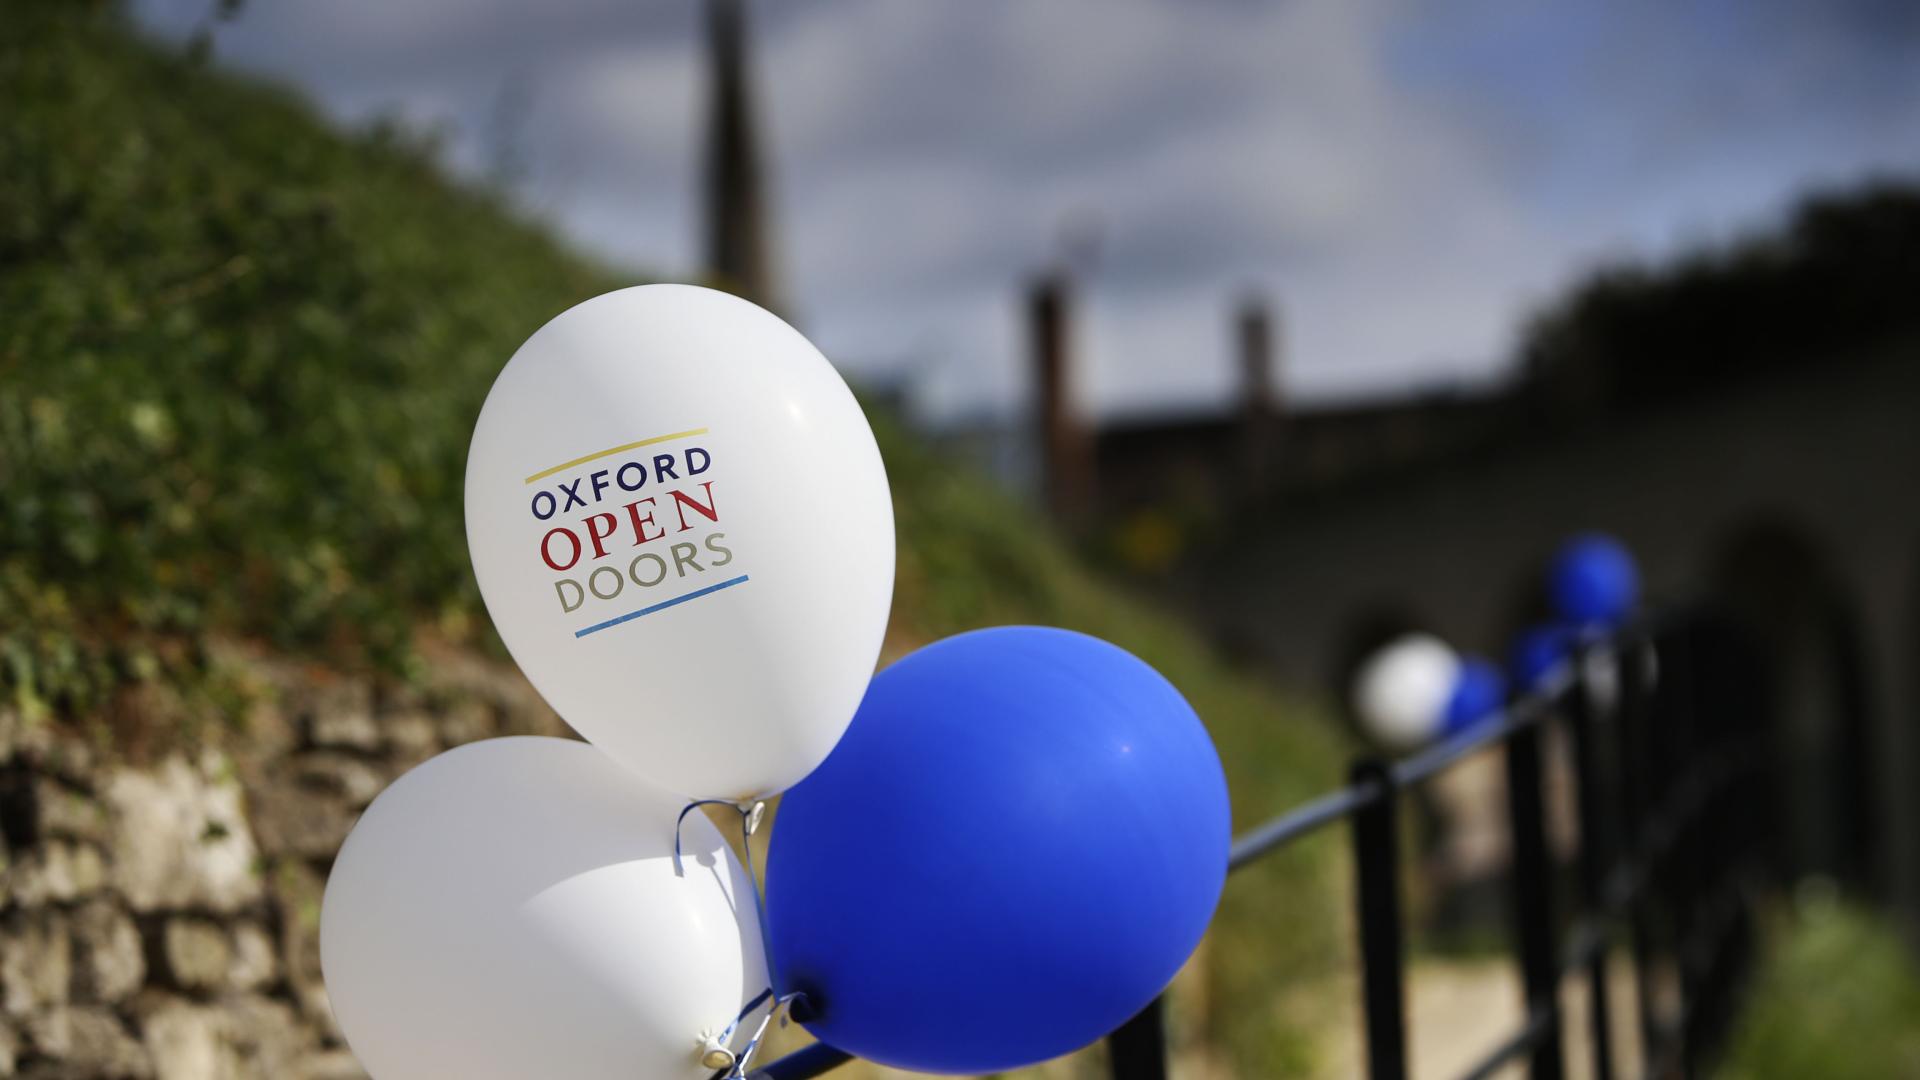 Oxford Open Doors balloons